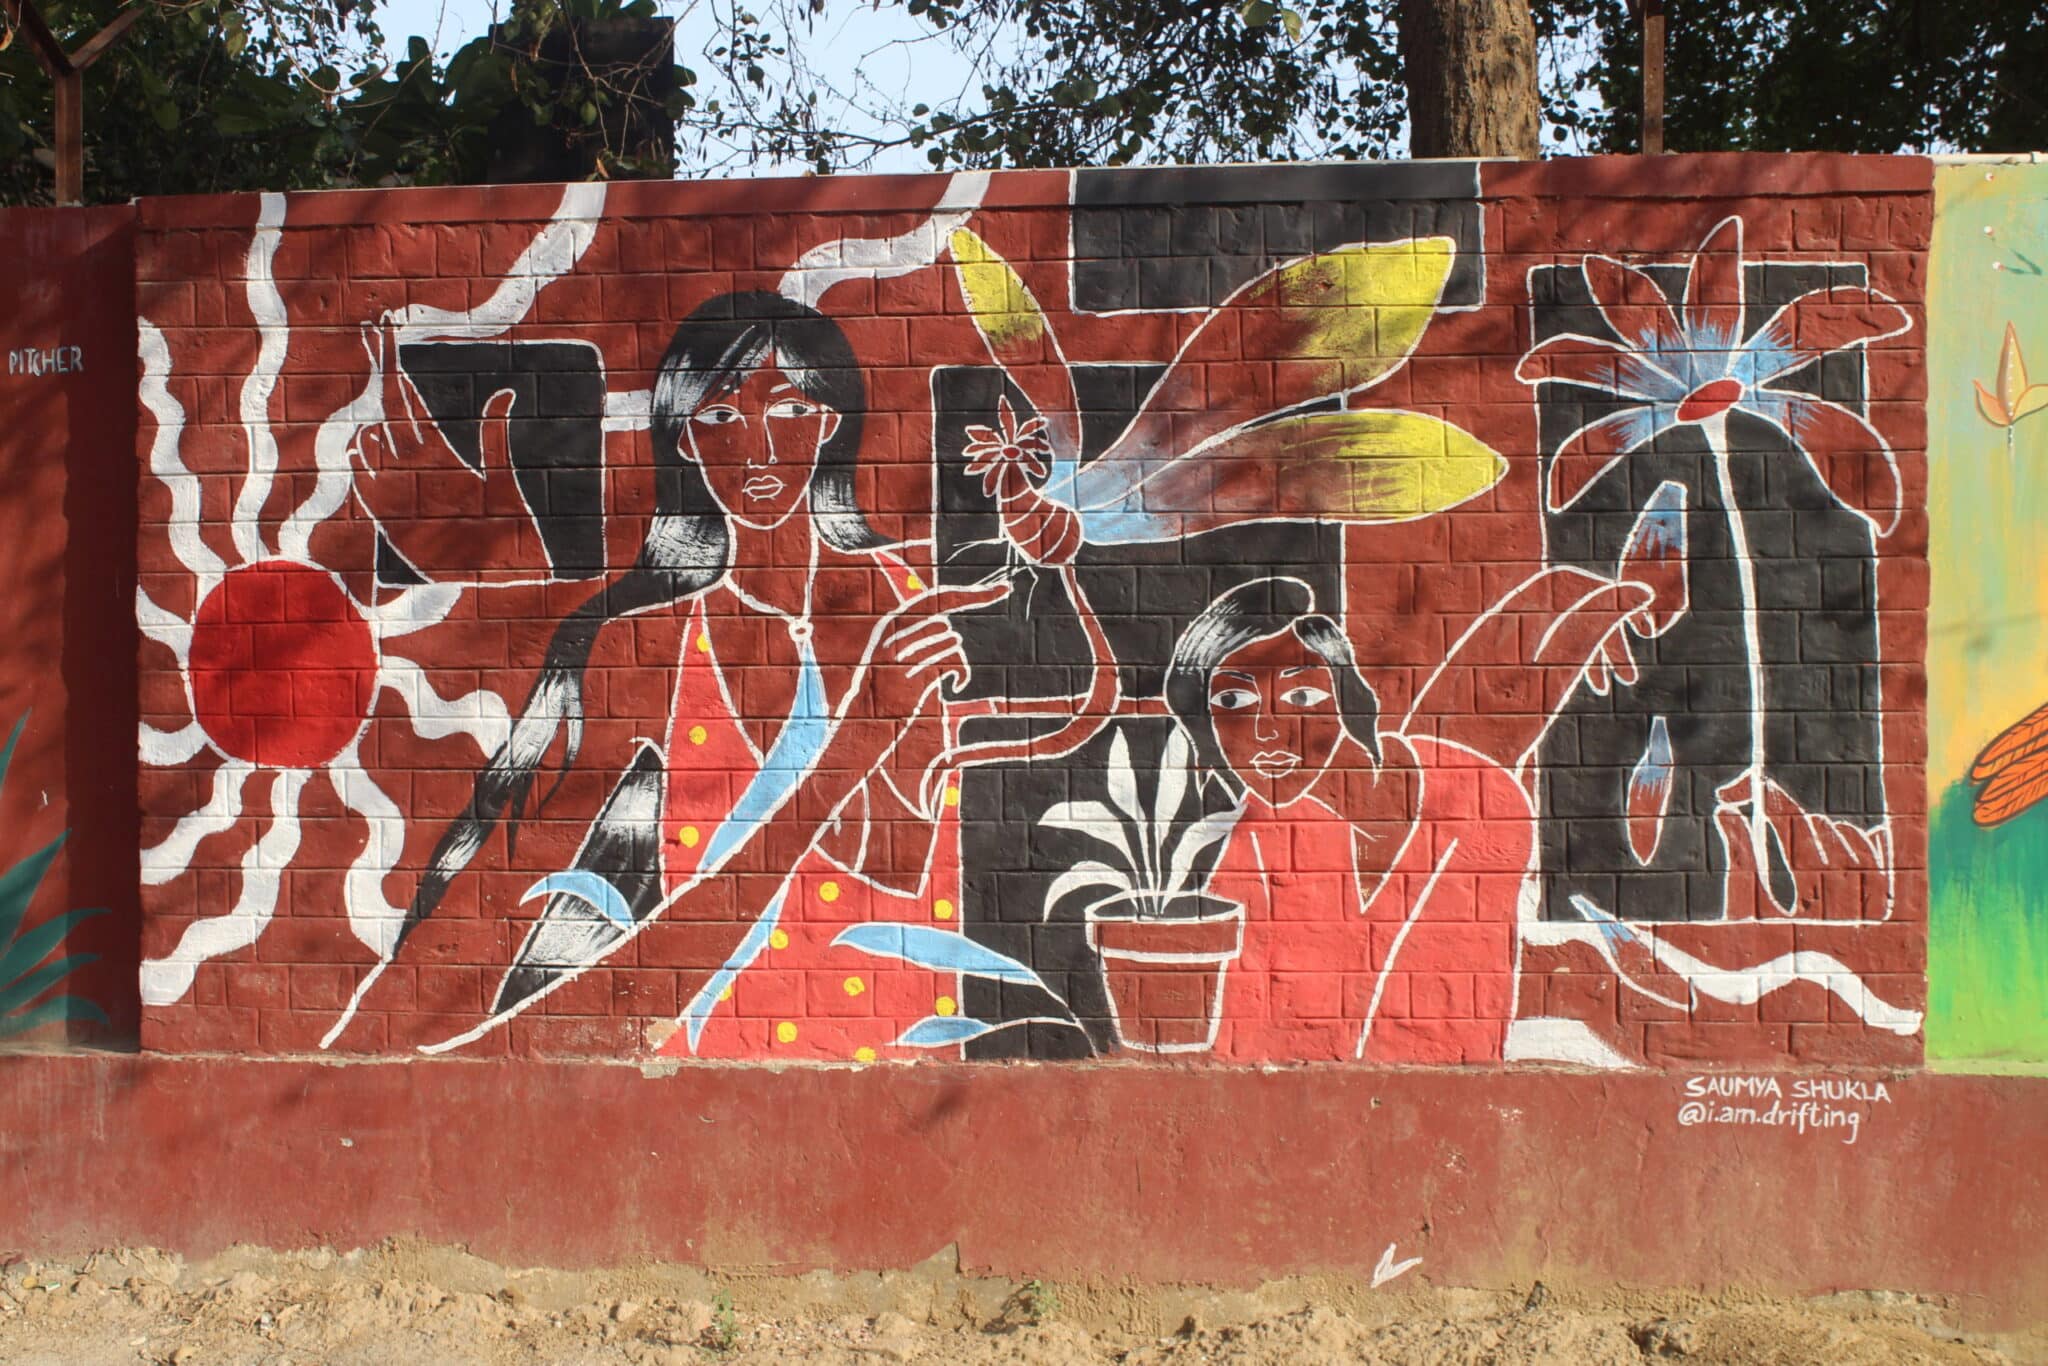 ಲೇಡೀಸ್ ಫಸ್ಟ್ ಸ್ಟ್ರೀಟ್ ಆರ್ಟ್ ಗುರುಗ್ರಾಮ್ 2021 ರಲ್ಲಿ ಸೌಮ್ಯ ಶುಕ್ಲಾ ಅವರ ಕಲಾಕೃತಿ. ಫೋಟೋ: ಅಭಿಷೇಕ್ ದಾಗಾ